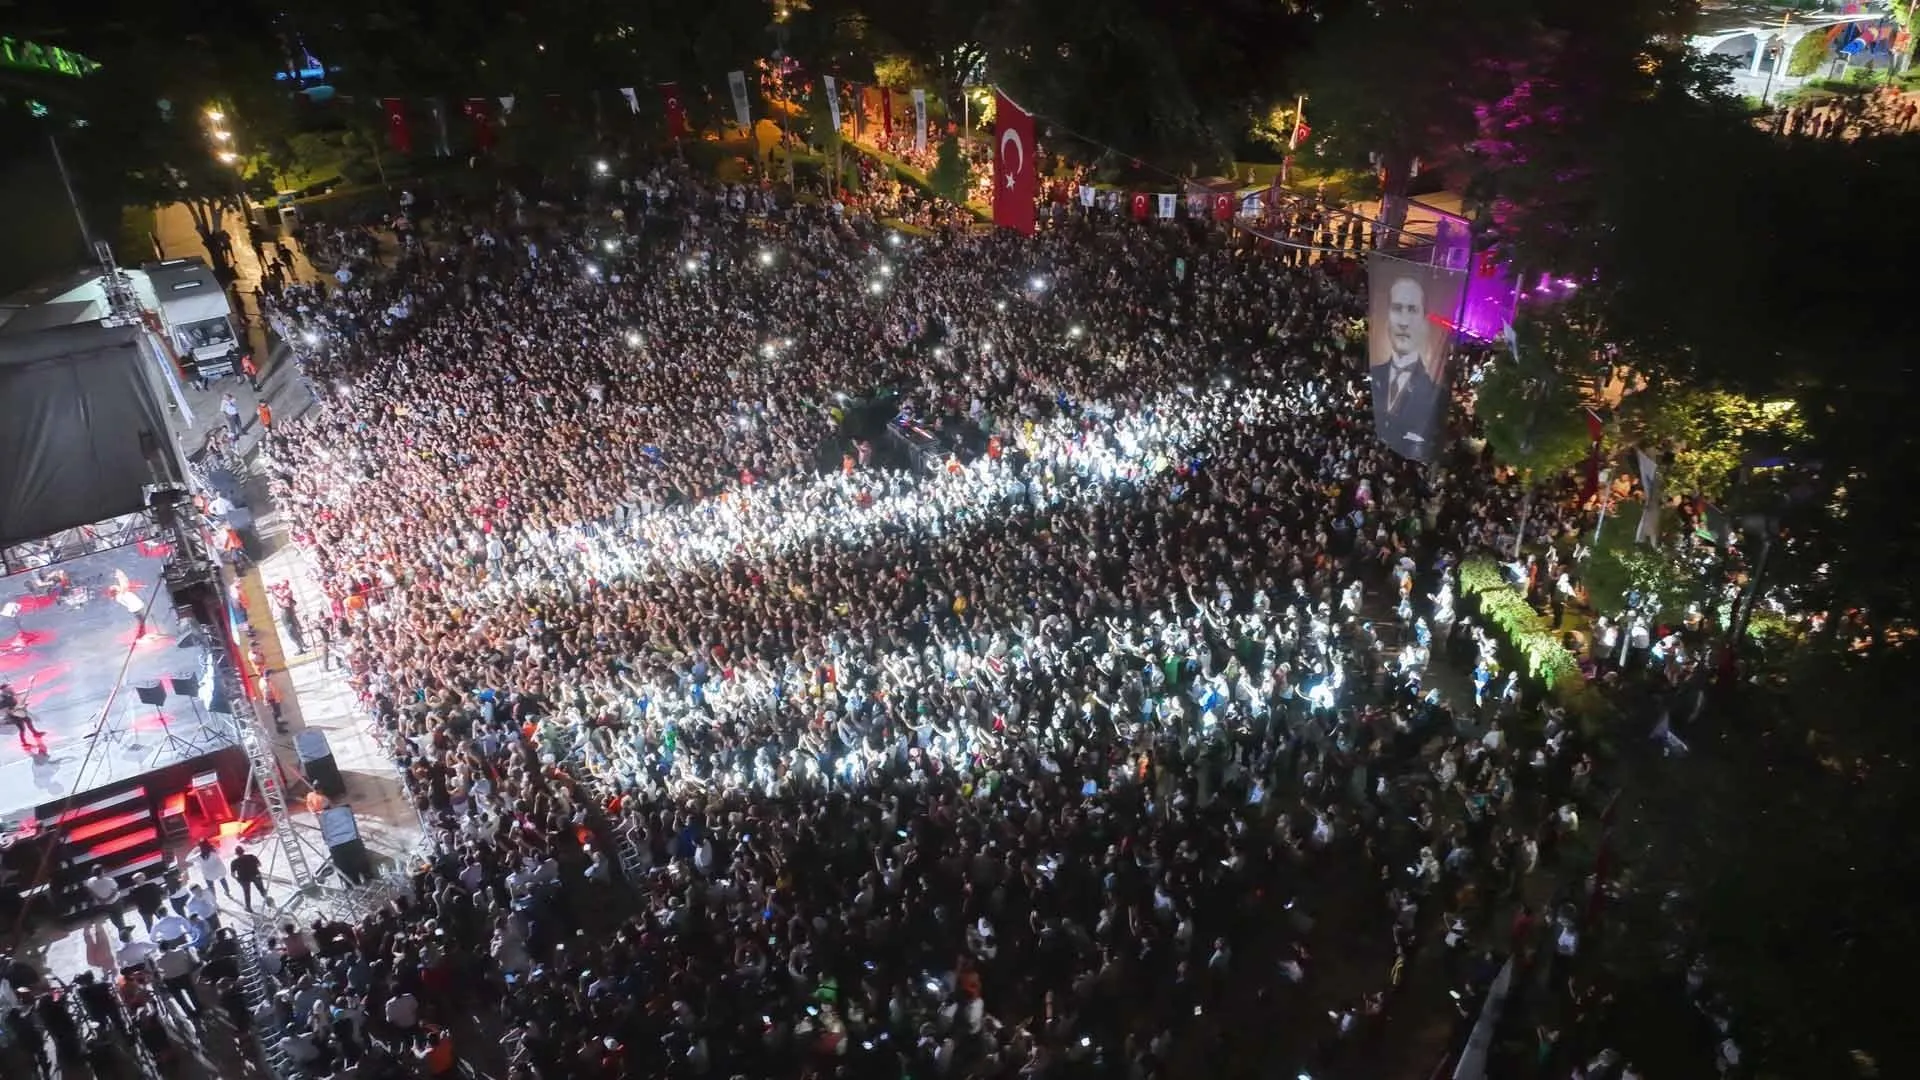 30 AOÛT CALENDRIER DES CONCERTS D’ANKARA ANNONCÉ !  30 août Jour de la Victoire Quels concerts y a-t-il à Ankara ?  – Photoactualité